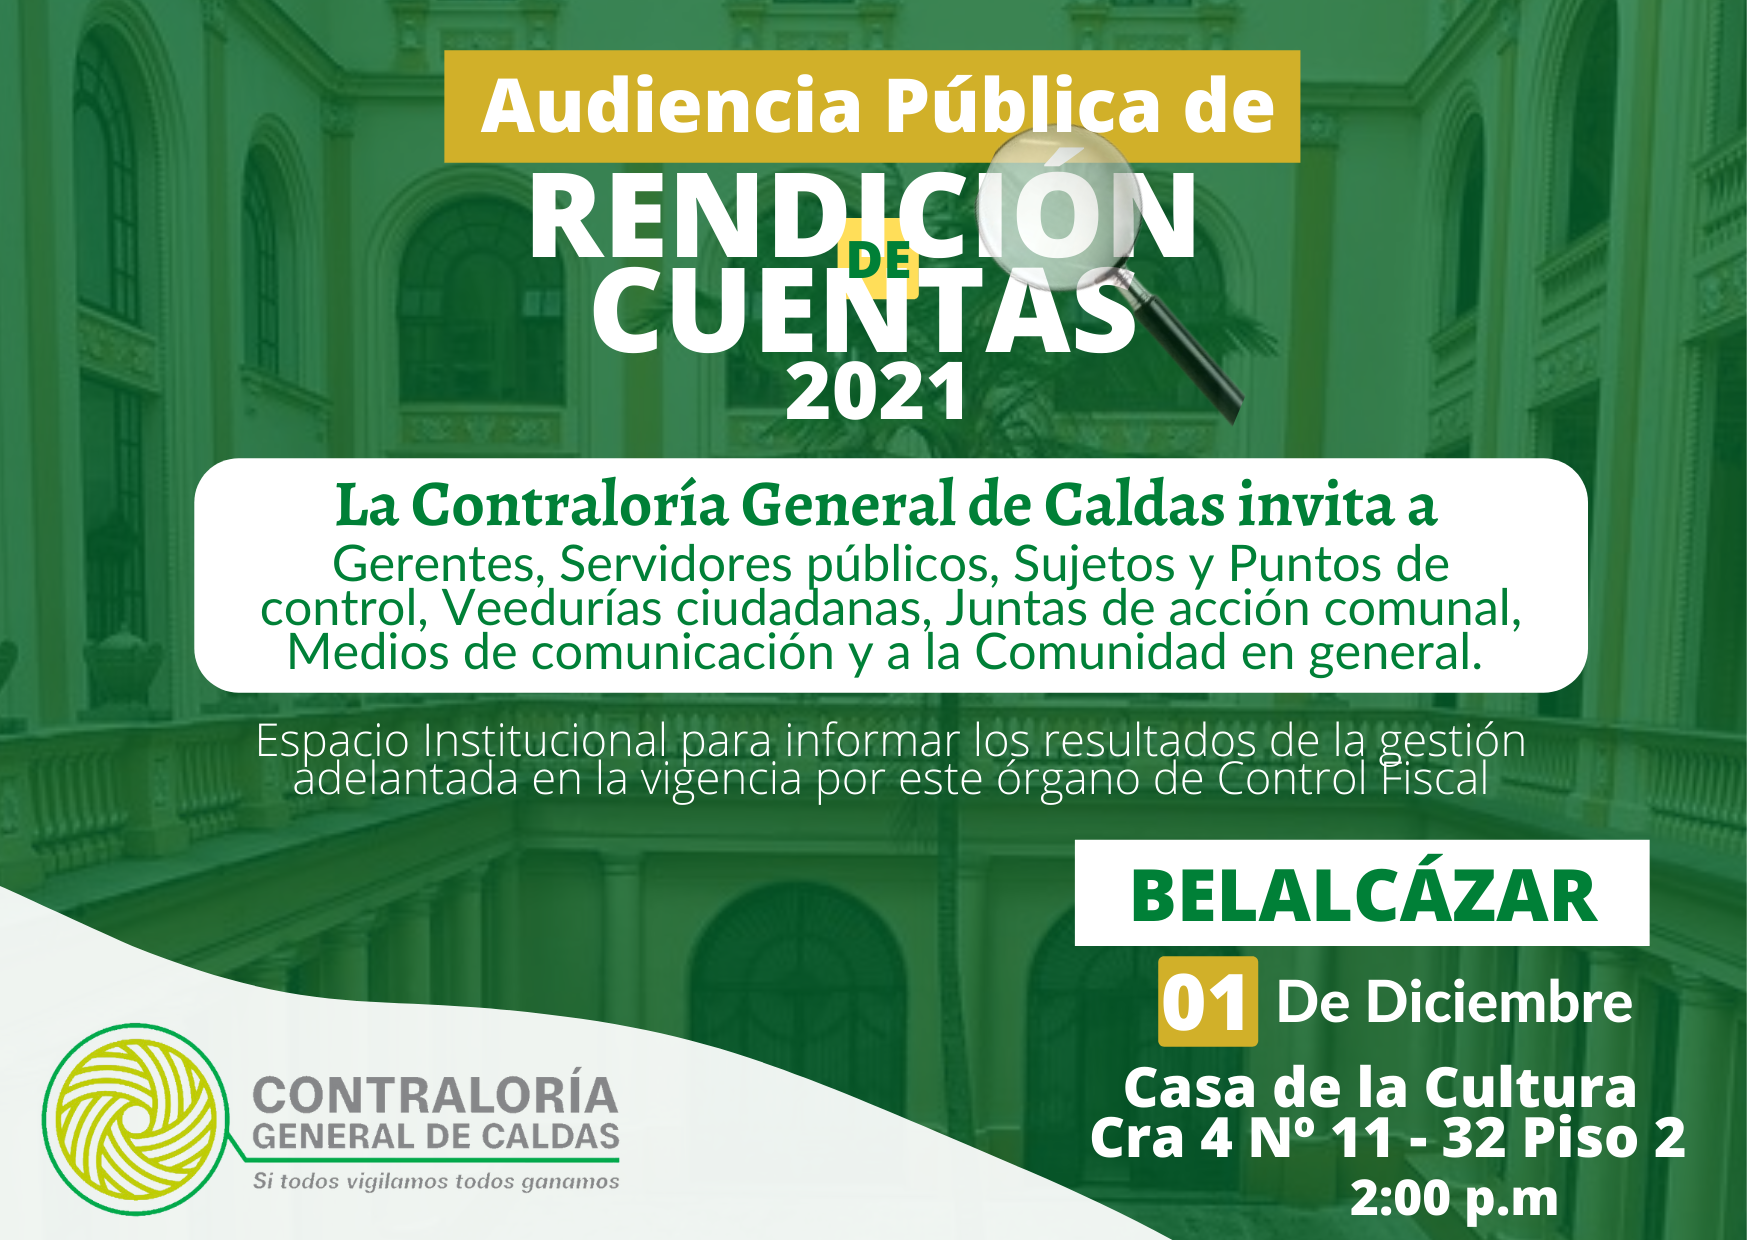 La Contraloría General de Caldas invita a la Audiencia Pública de Rendición de cuentas de la Vigencia 2021 que se realizará el día 01 de Diciembre, en el Municipio de Belalcázar.